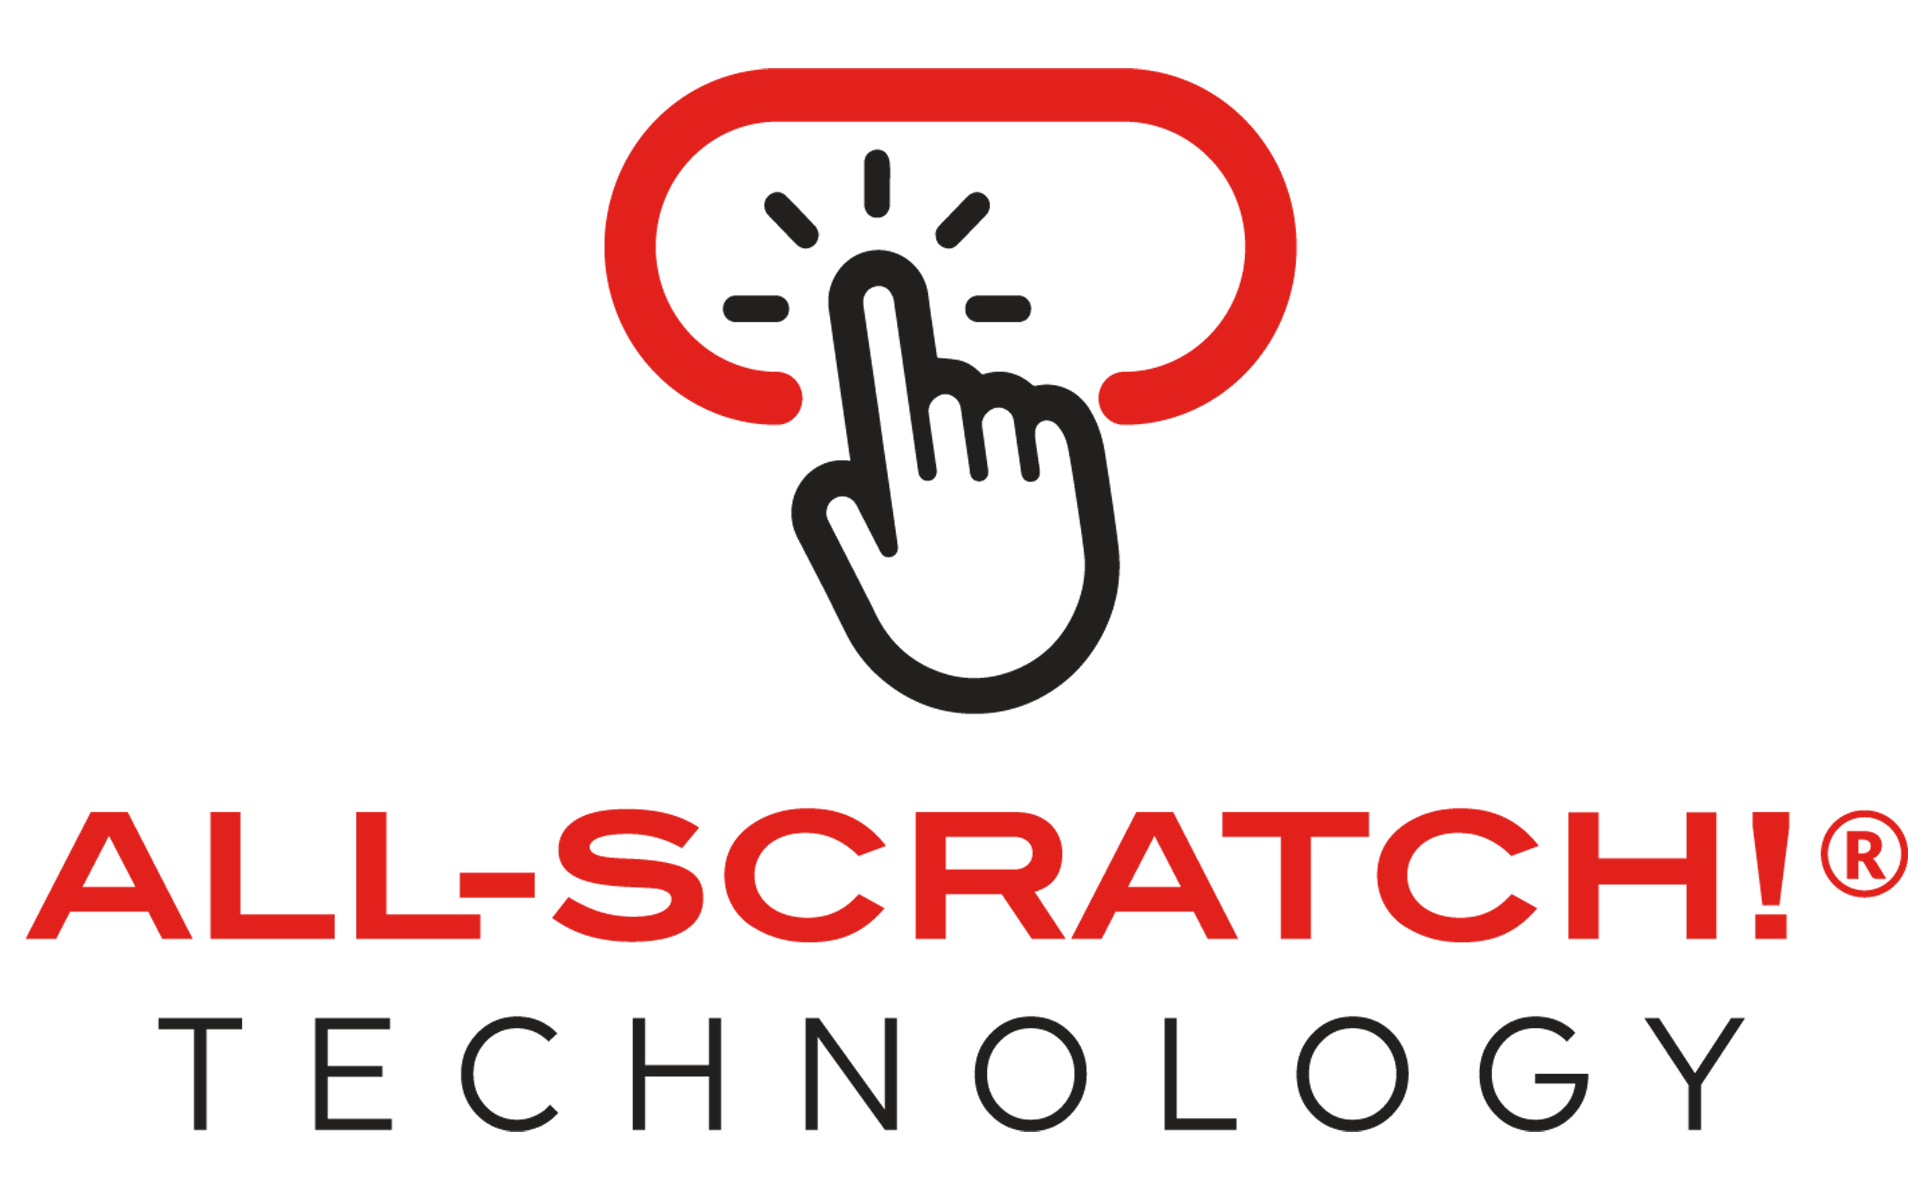 All-Scratch! Technology